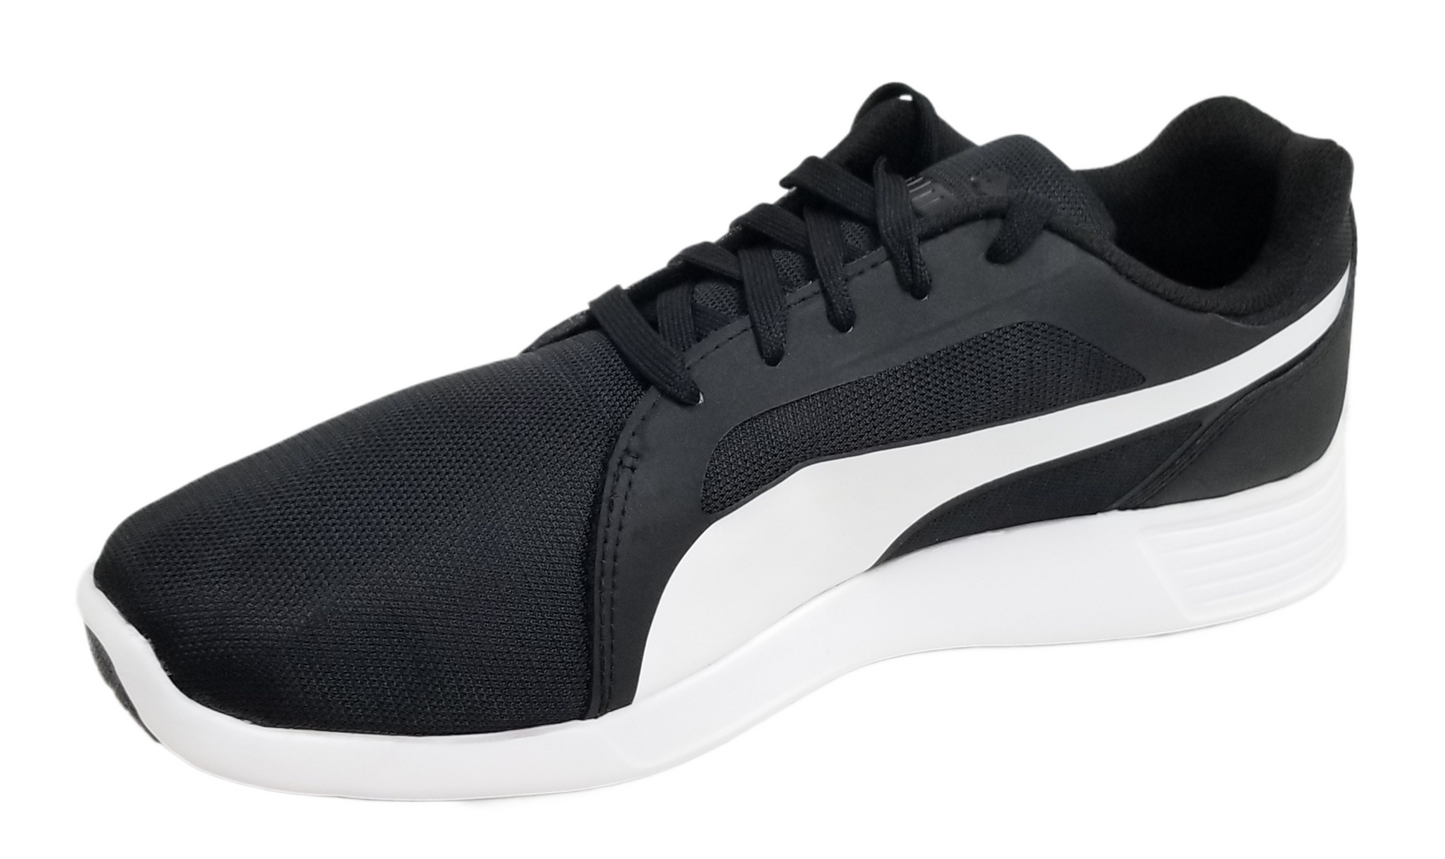 Puma Men ST Trainer Evo Shoes Black-White 359904-01